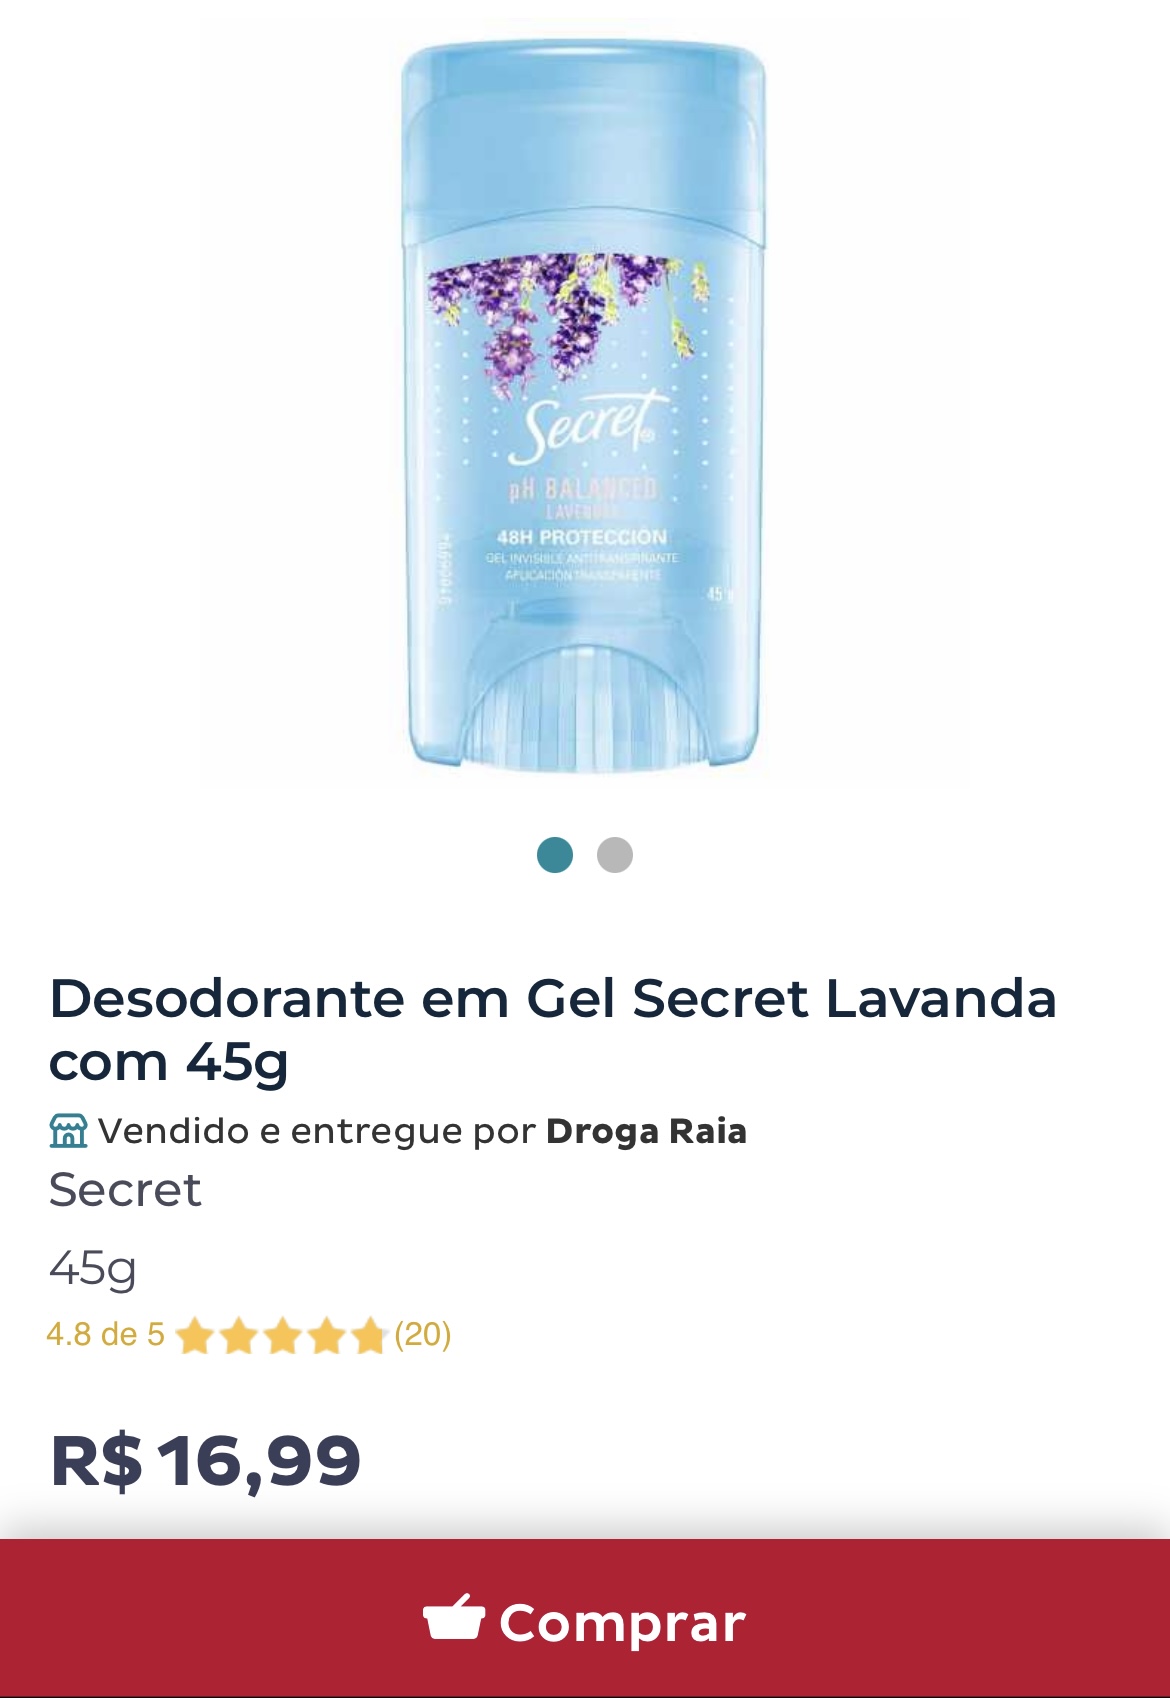 desodorante secret, onde comprar, desodorante secret no brasil, melhor desodorante, importado, melhor preço, desodorante das blogueiras